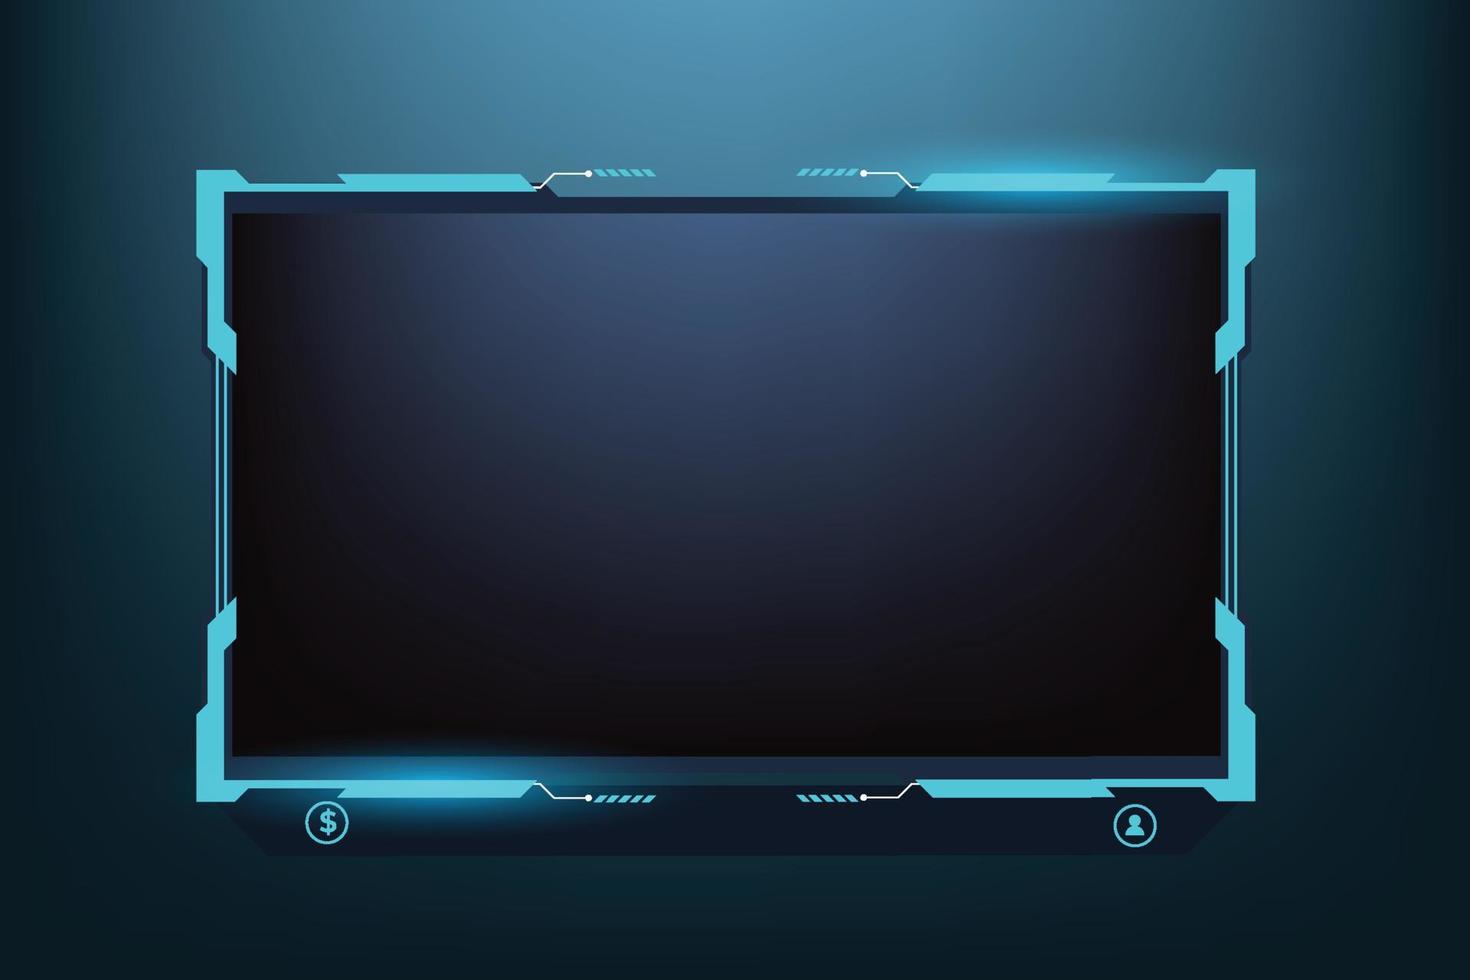 online streaming bedekking en scherm koppel decoratie. leven gaming bedekking vector voor gamers met abstract vormen. uitzending scherm paneel ontwerp met futuristische glimmend blauw kleur.